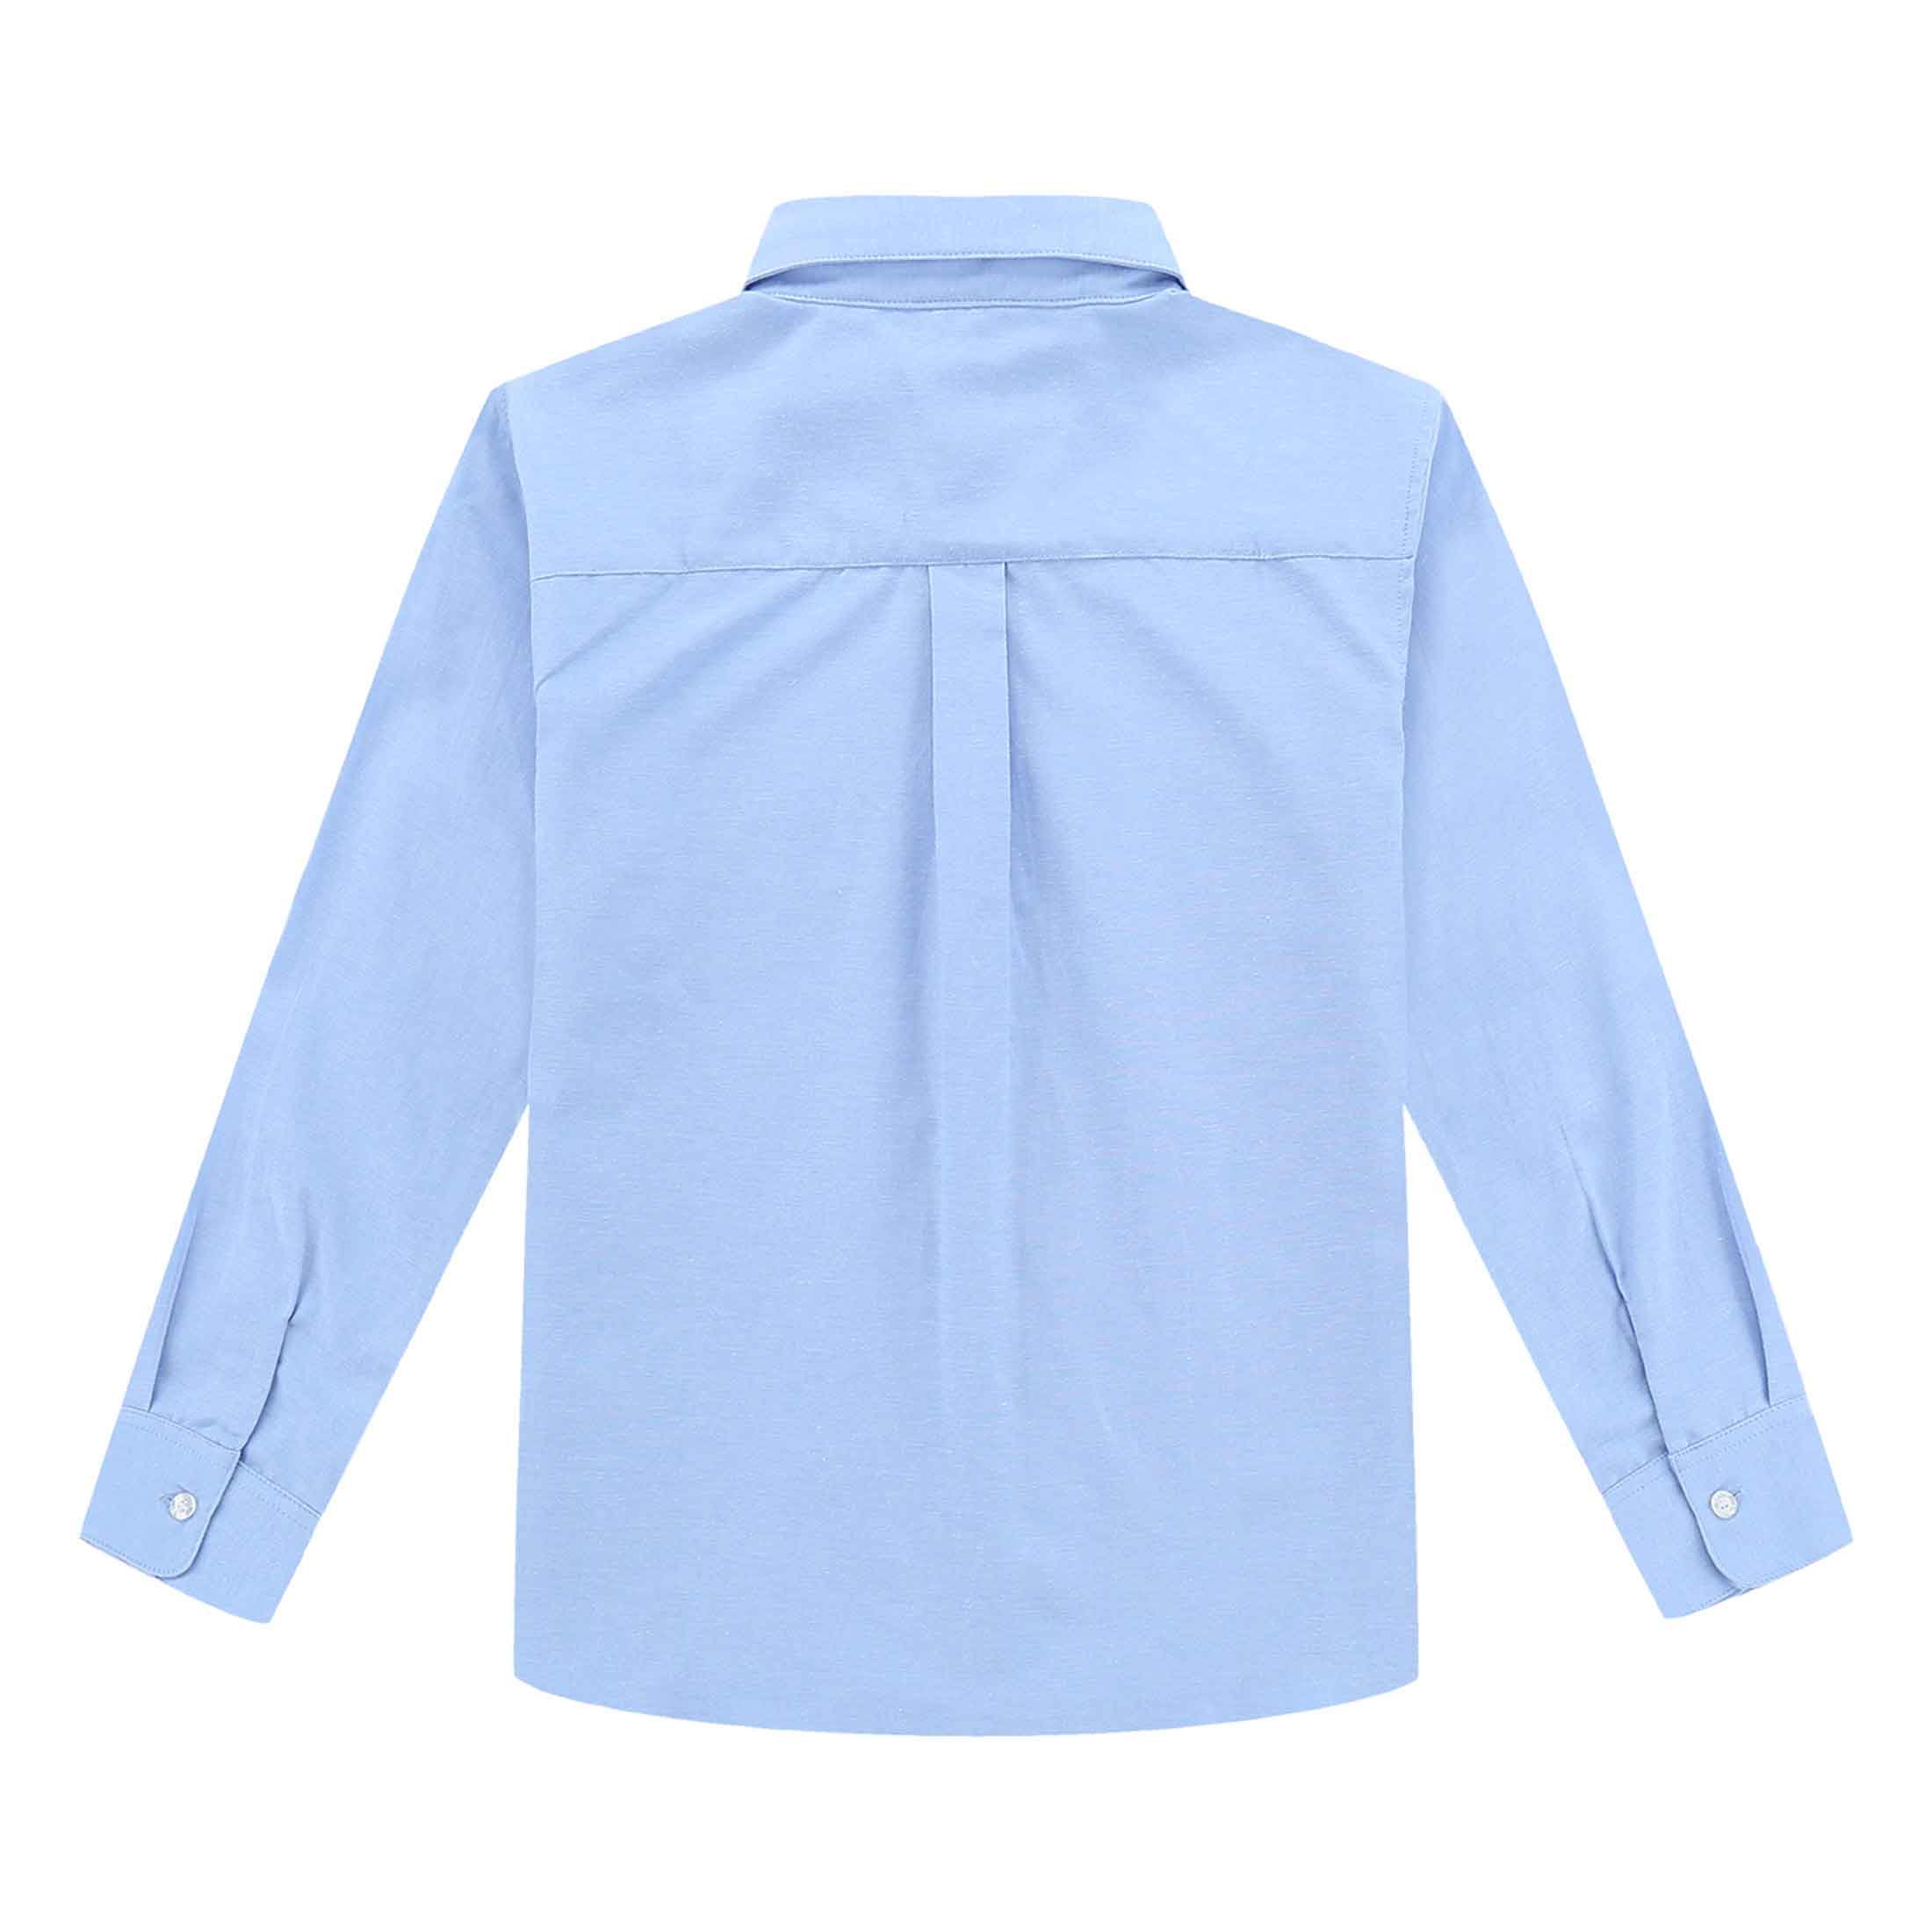 Bienzoe Girls School Uniform Oxford Long Sleeve Blouse Bowtie Pack 